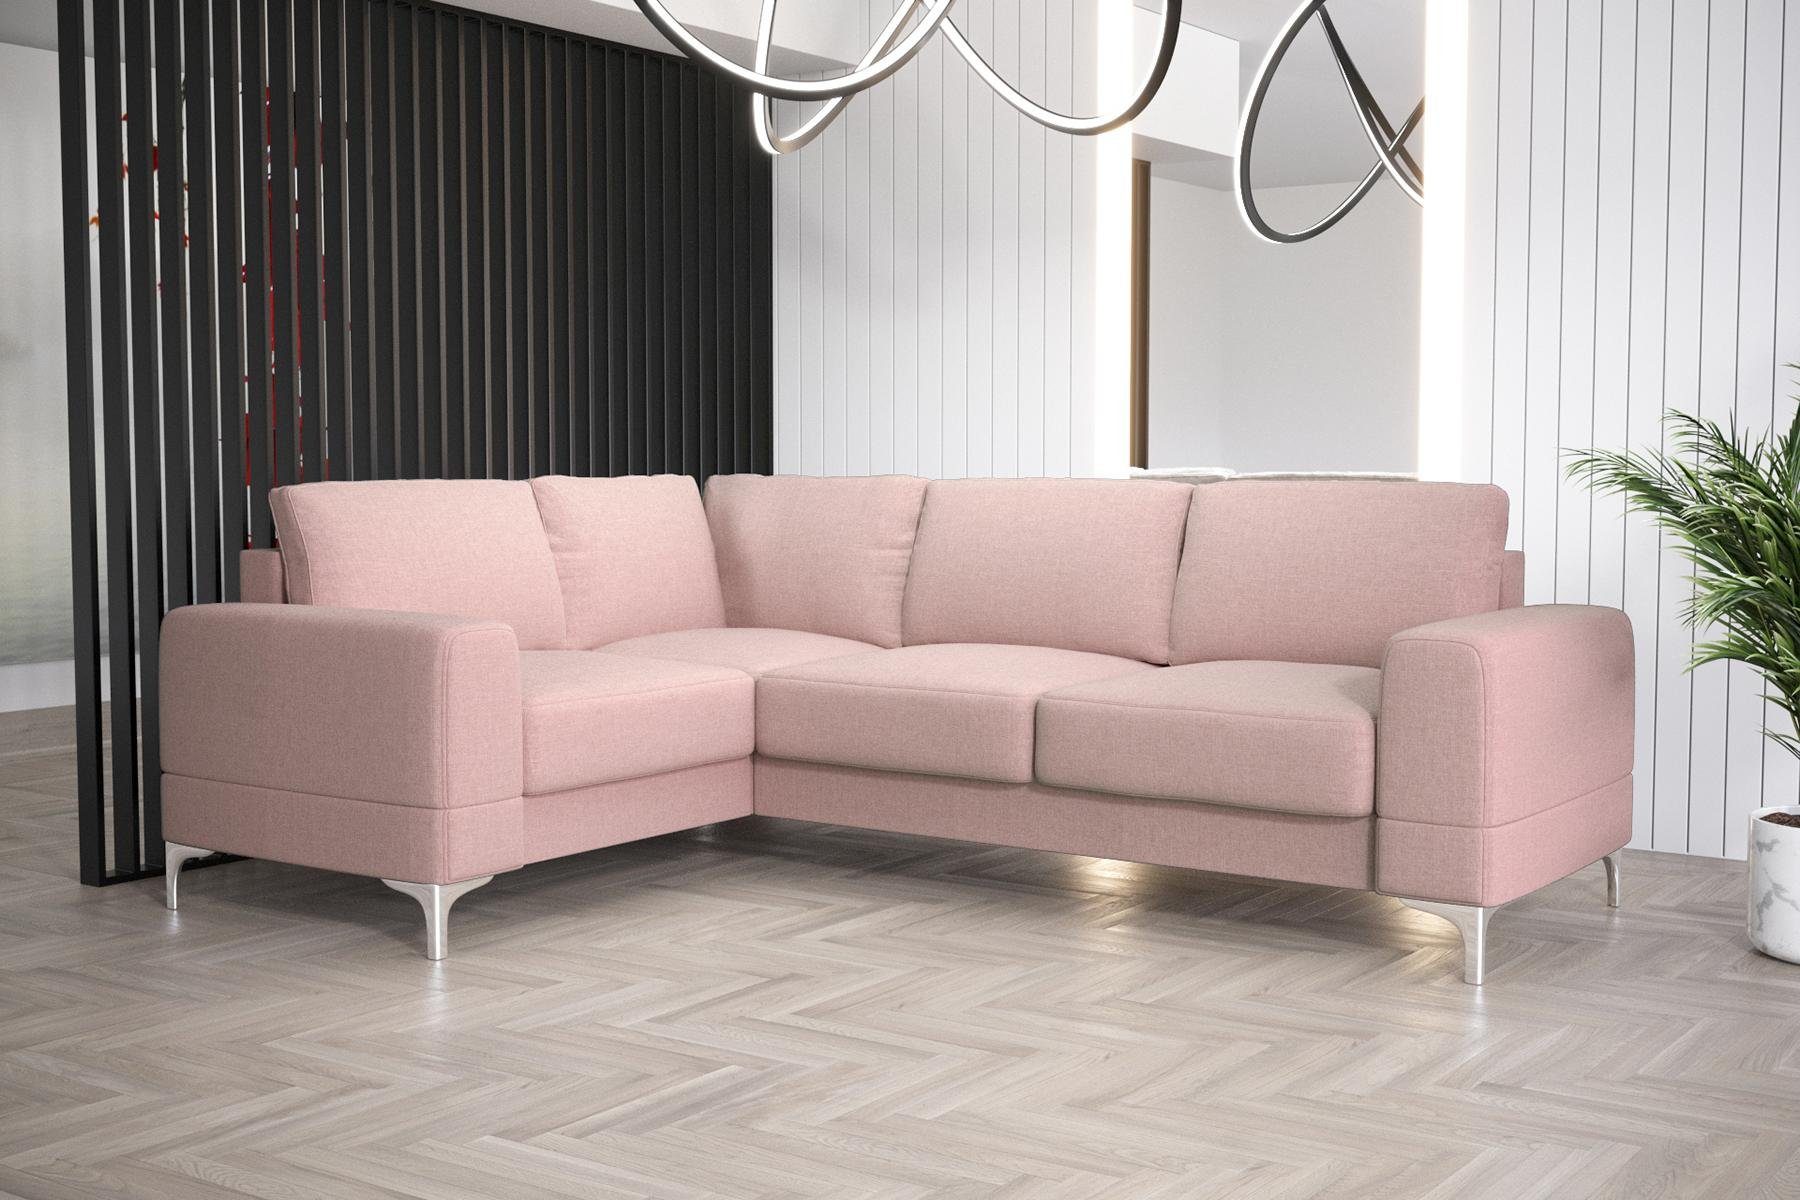 L-Form in Wohnzimmer Europe Ecksofa Luxus Made Möbel Modern JVmoebel Sofa Rosa Couch, Ecksofa